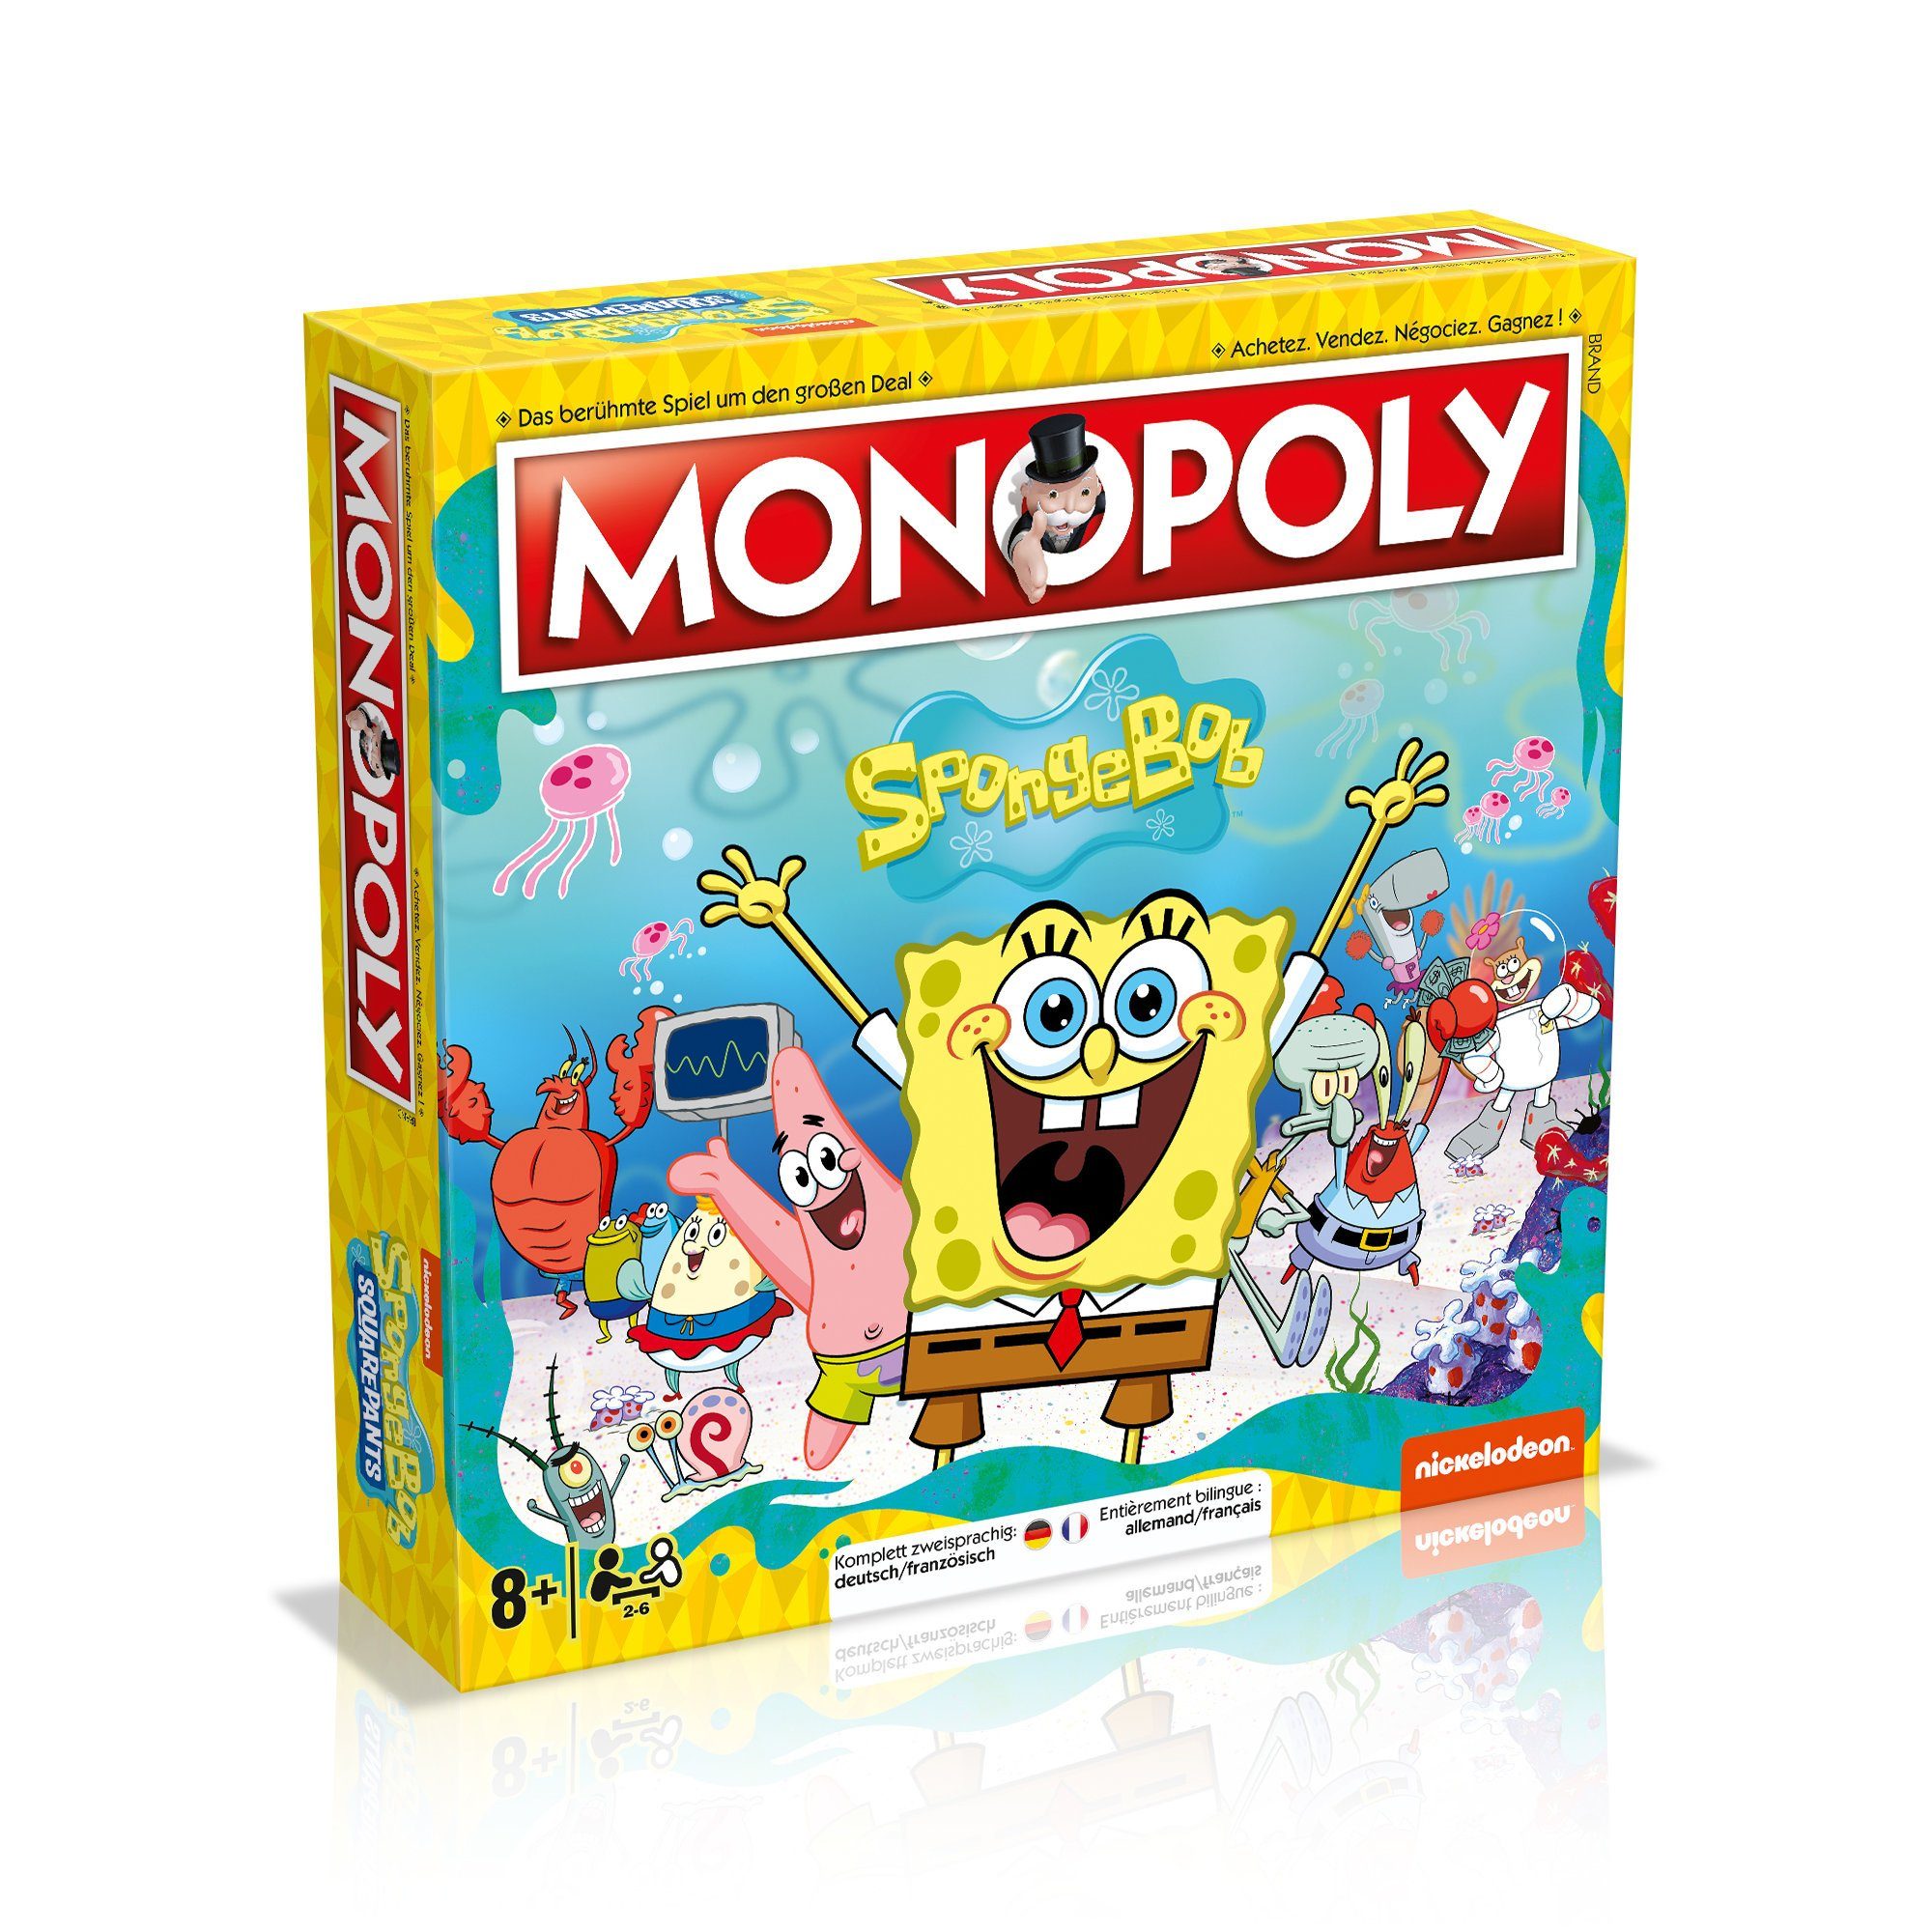 SpongeBob Schwammkopf Brettspiel Spiel, Monopoly zweisprachig Deutsch/Französisch, Moves Winning